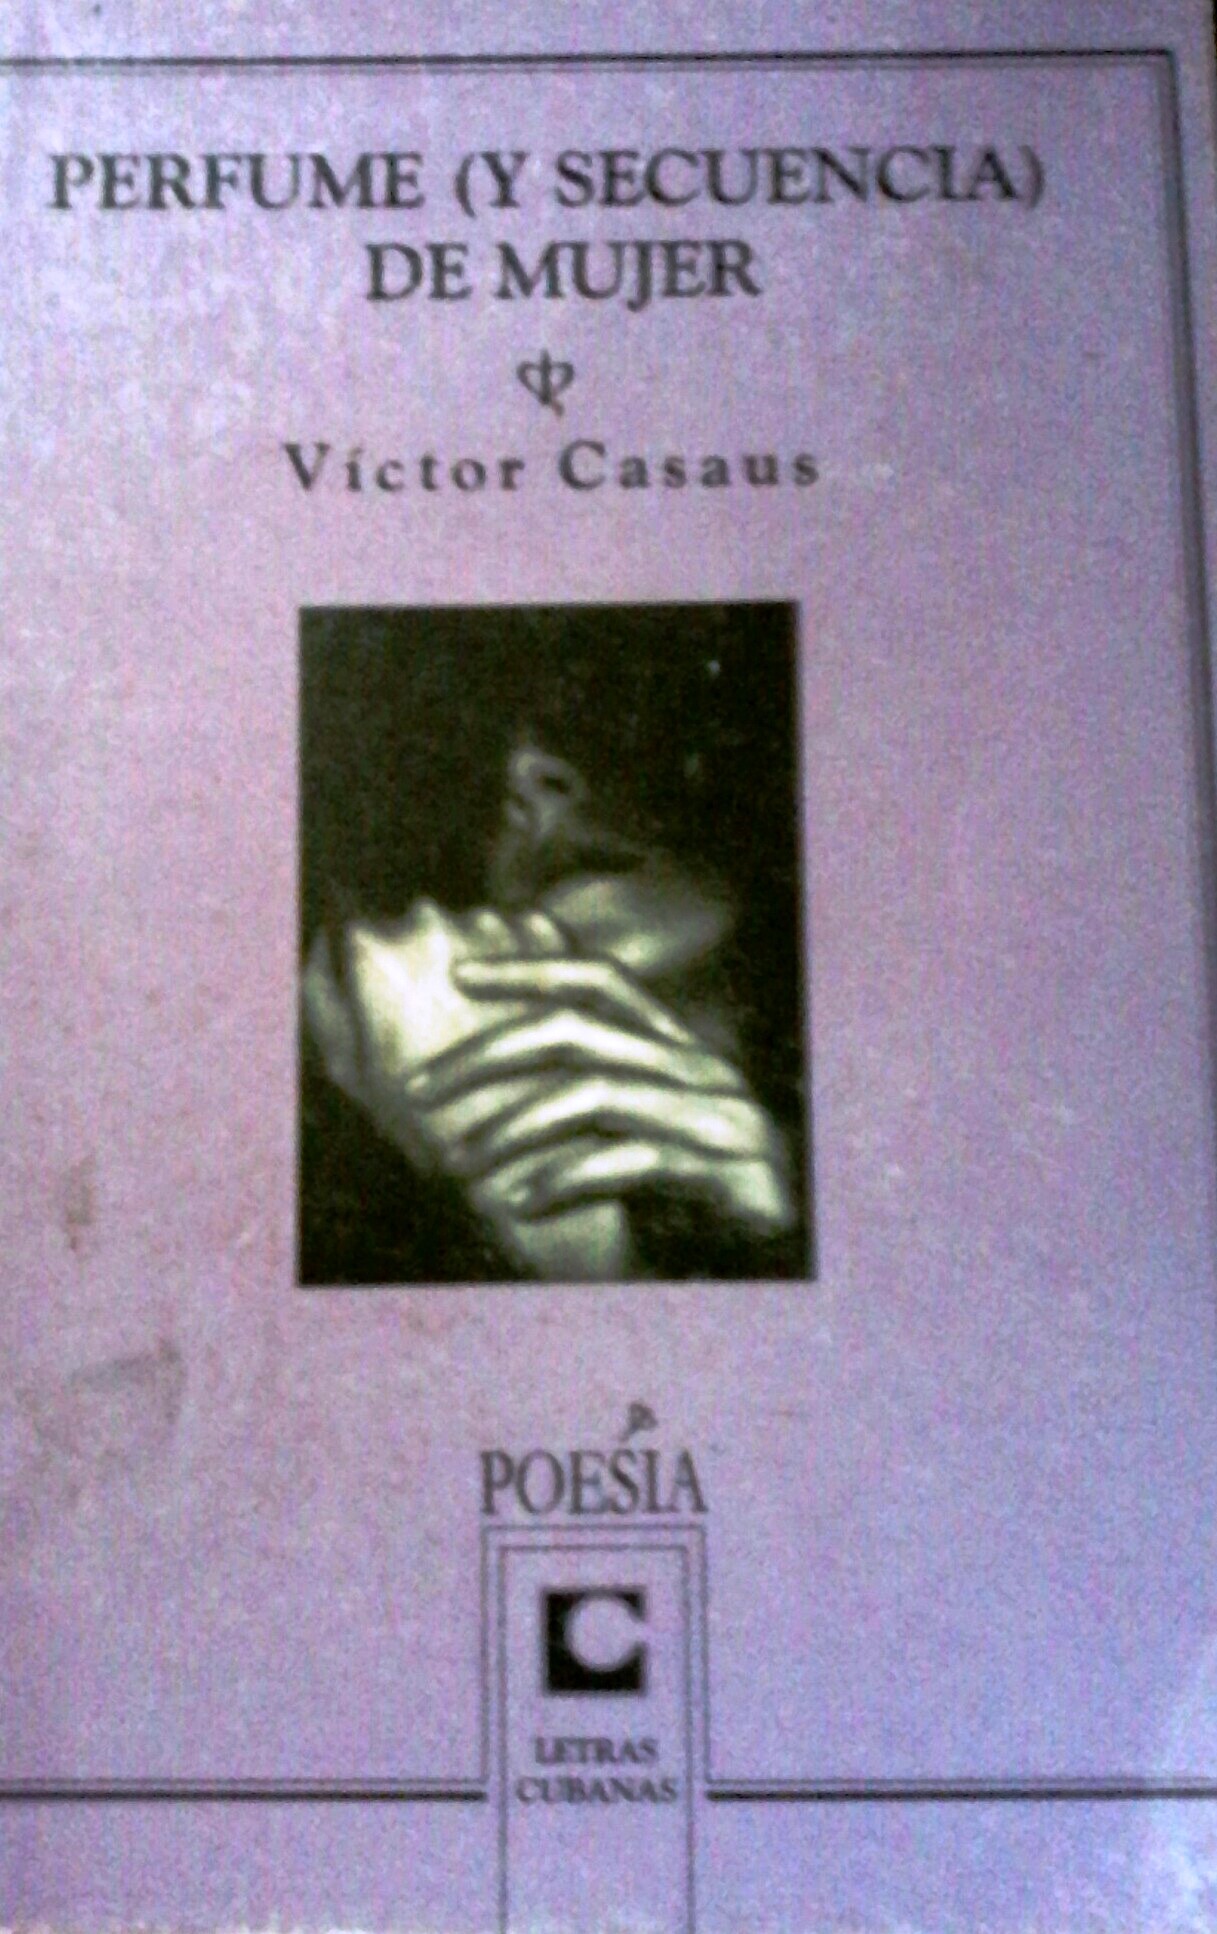 Foto de Programa Nacional por La Lectura .Reseña. “Perfume (y secuencia) de mujer” de Víctor Casaus.